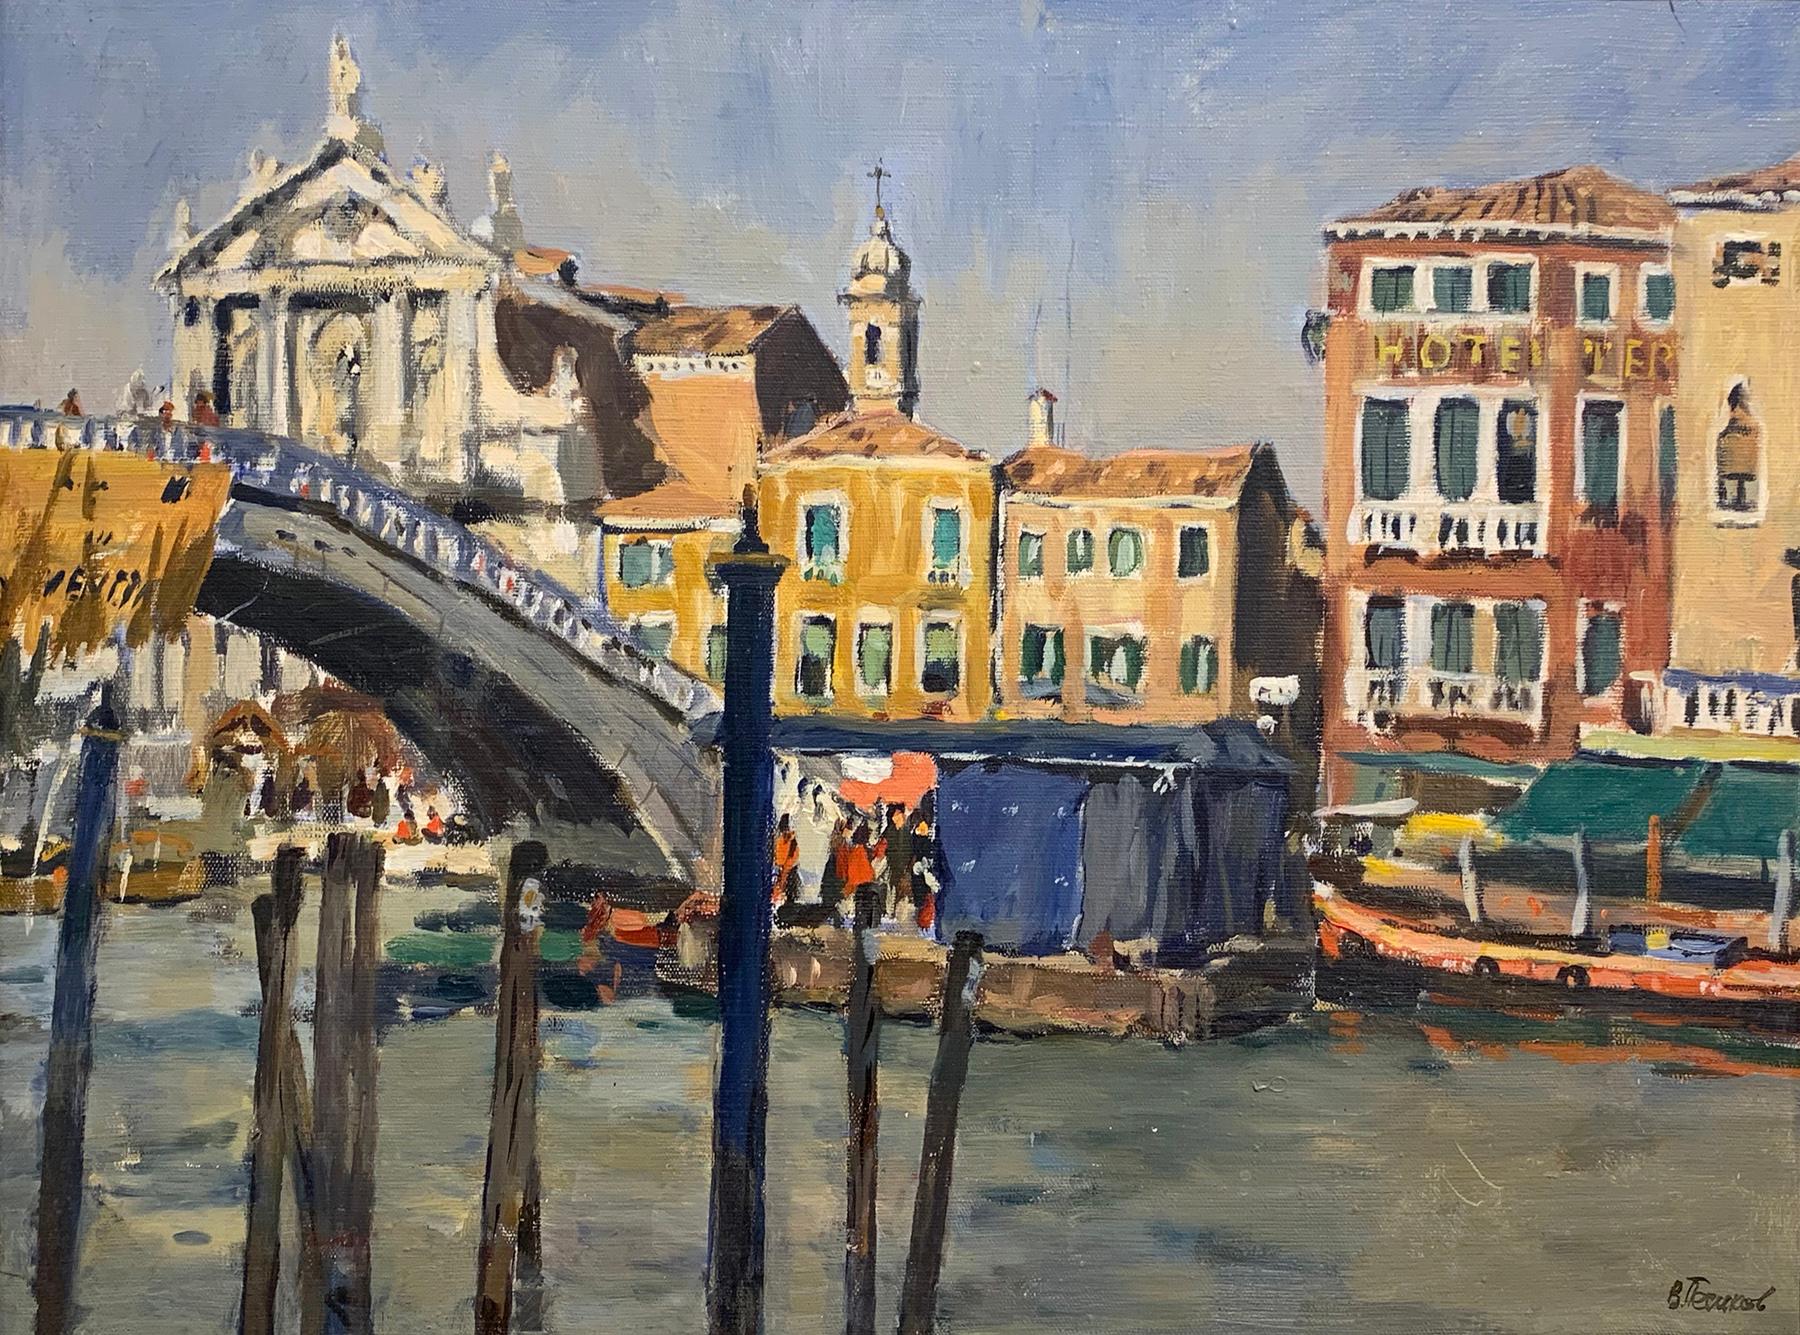 Venice. Grand canal. 1978. Original modern art painting